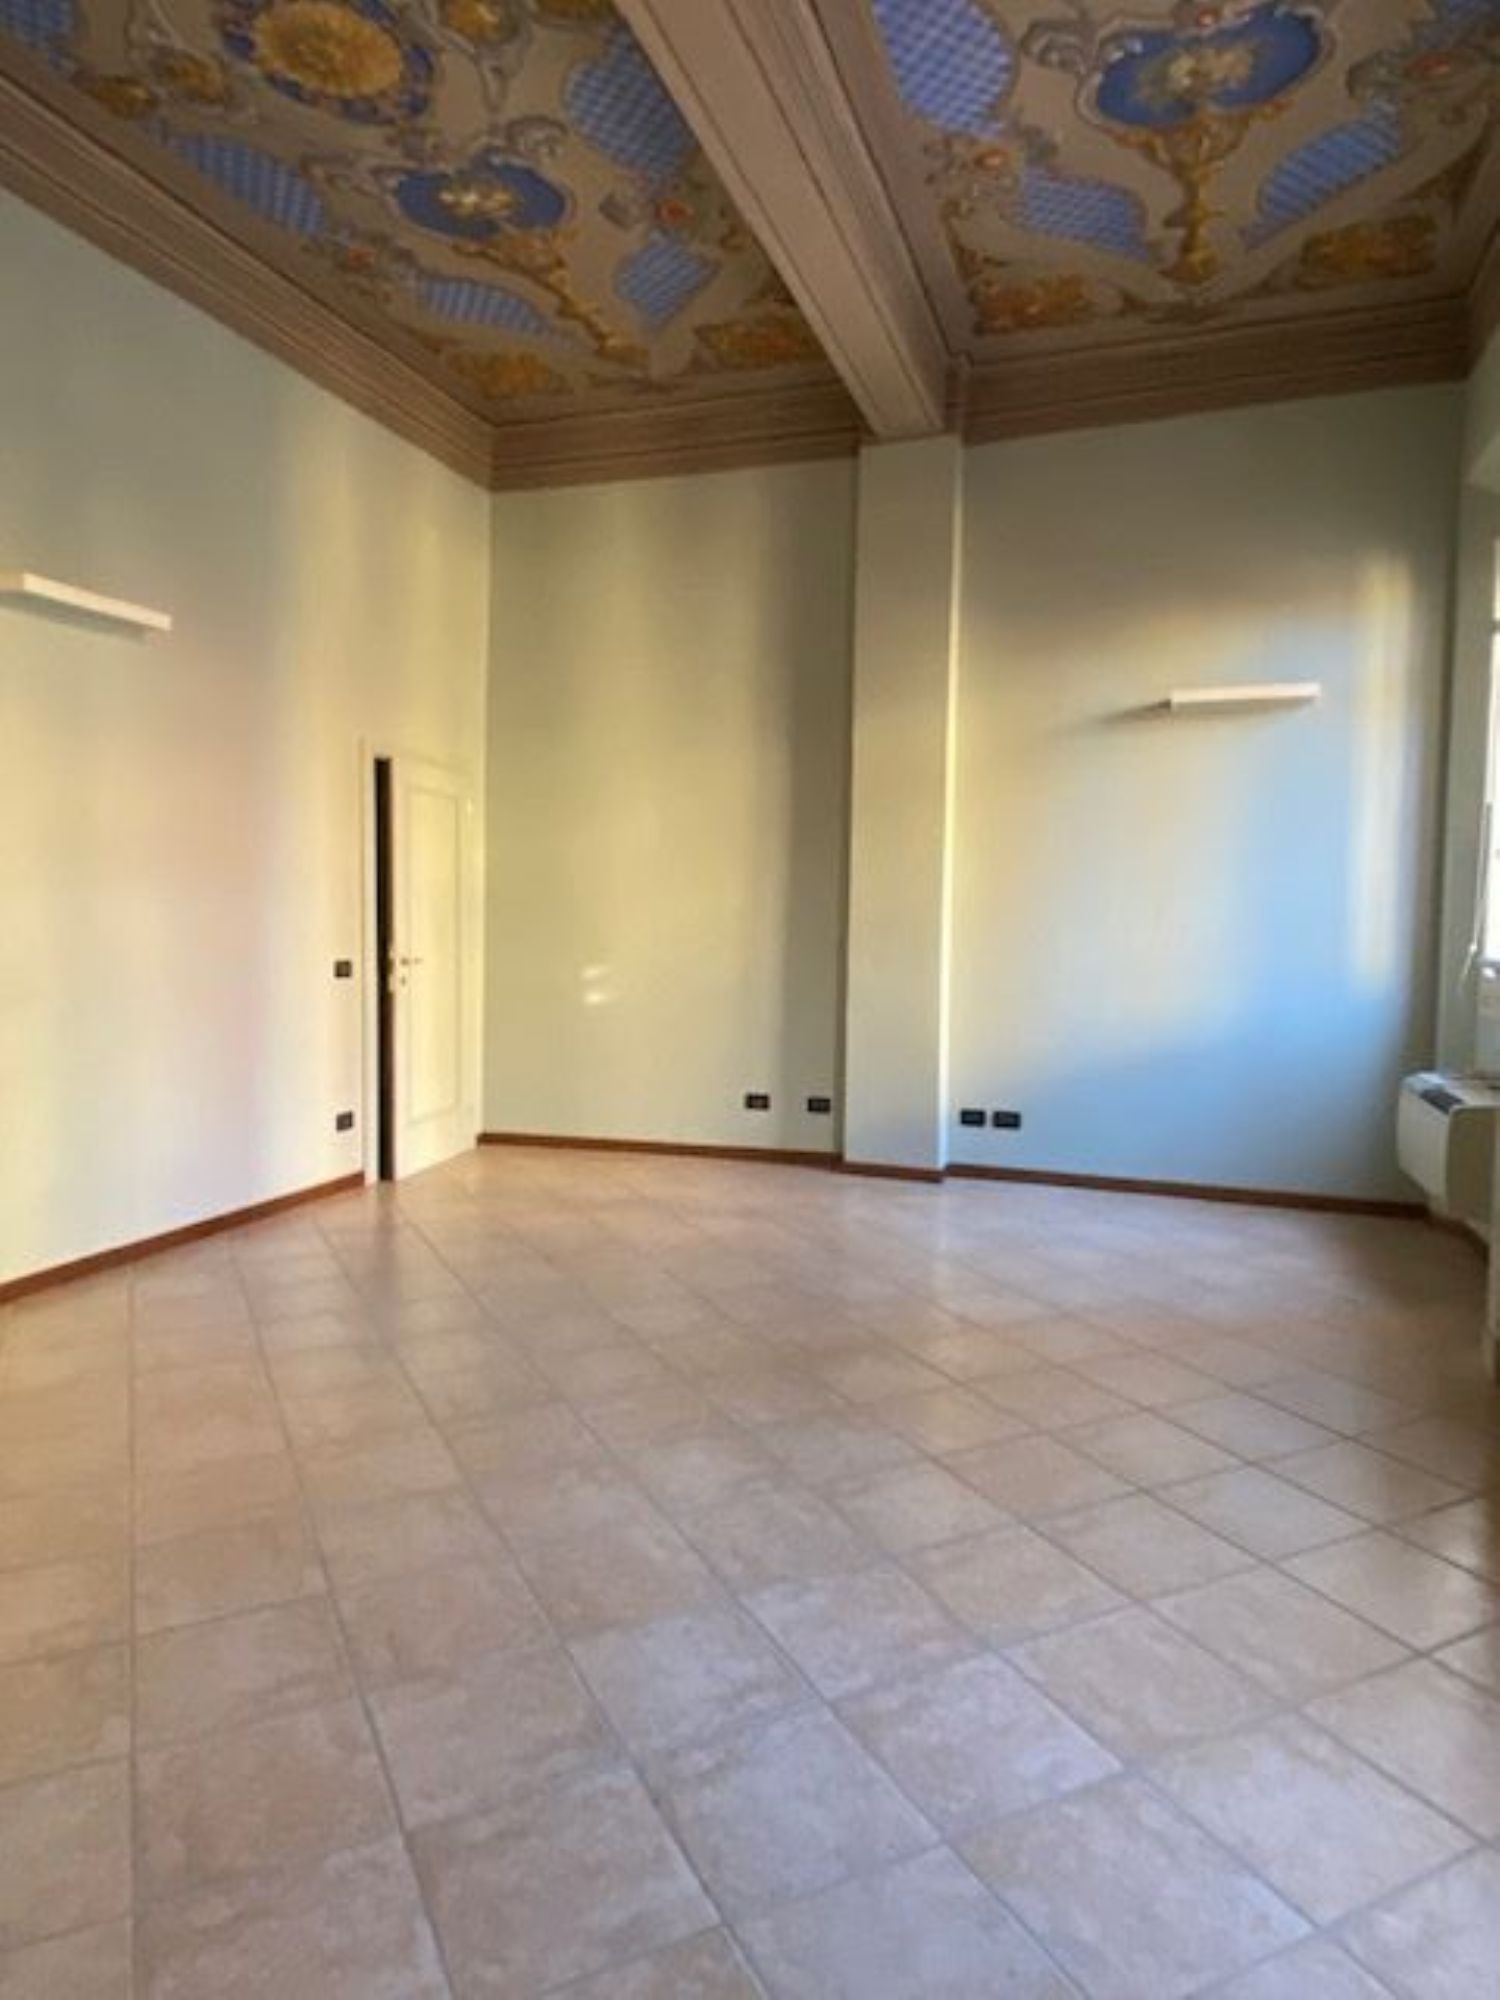 Ufficio / Studio in vendita a San Giovanni in Persiceto, 9999 locali, prezzo € 115.000 | PortaleAgenzieImmobiliari.it